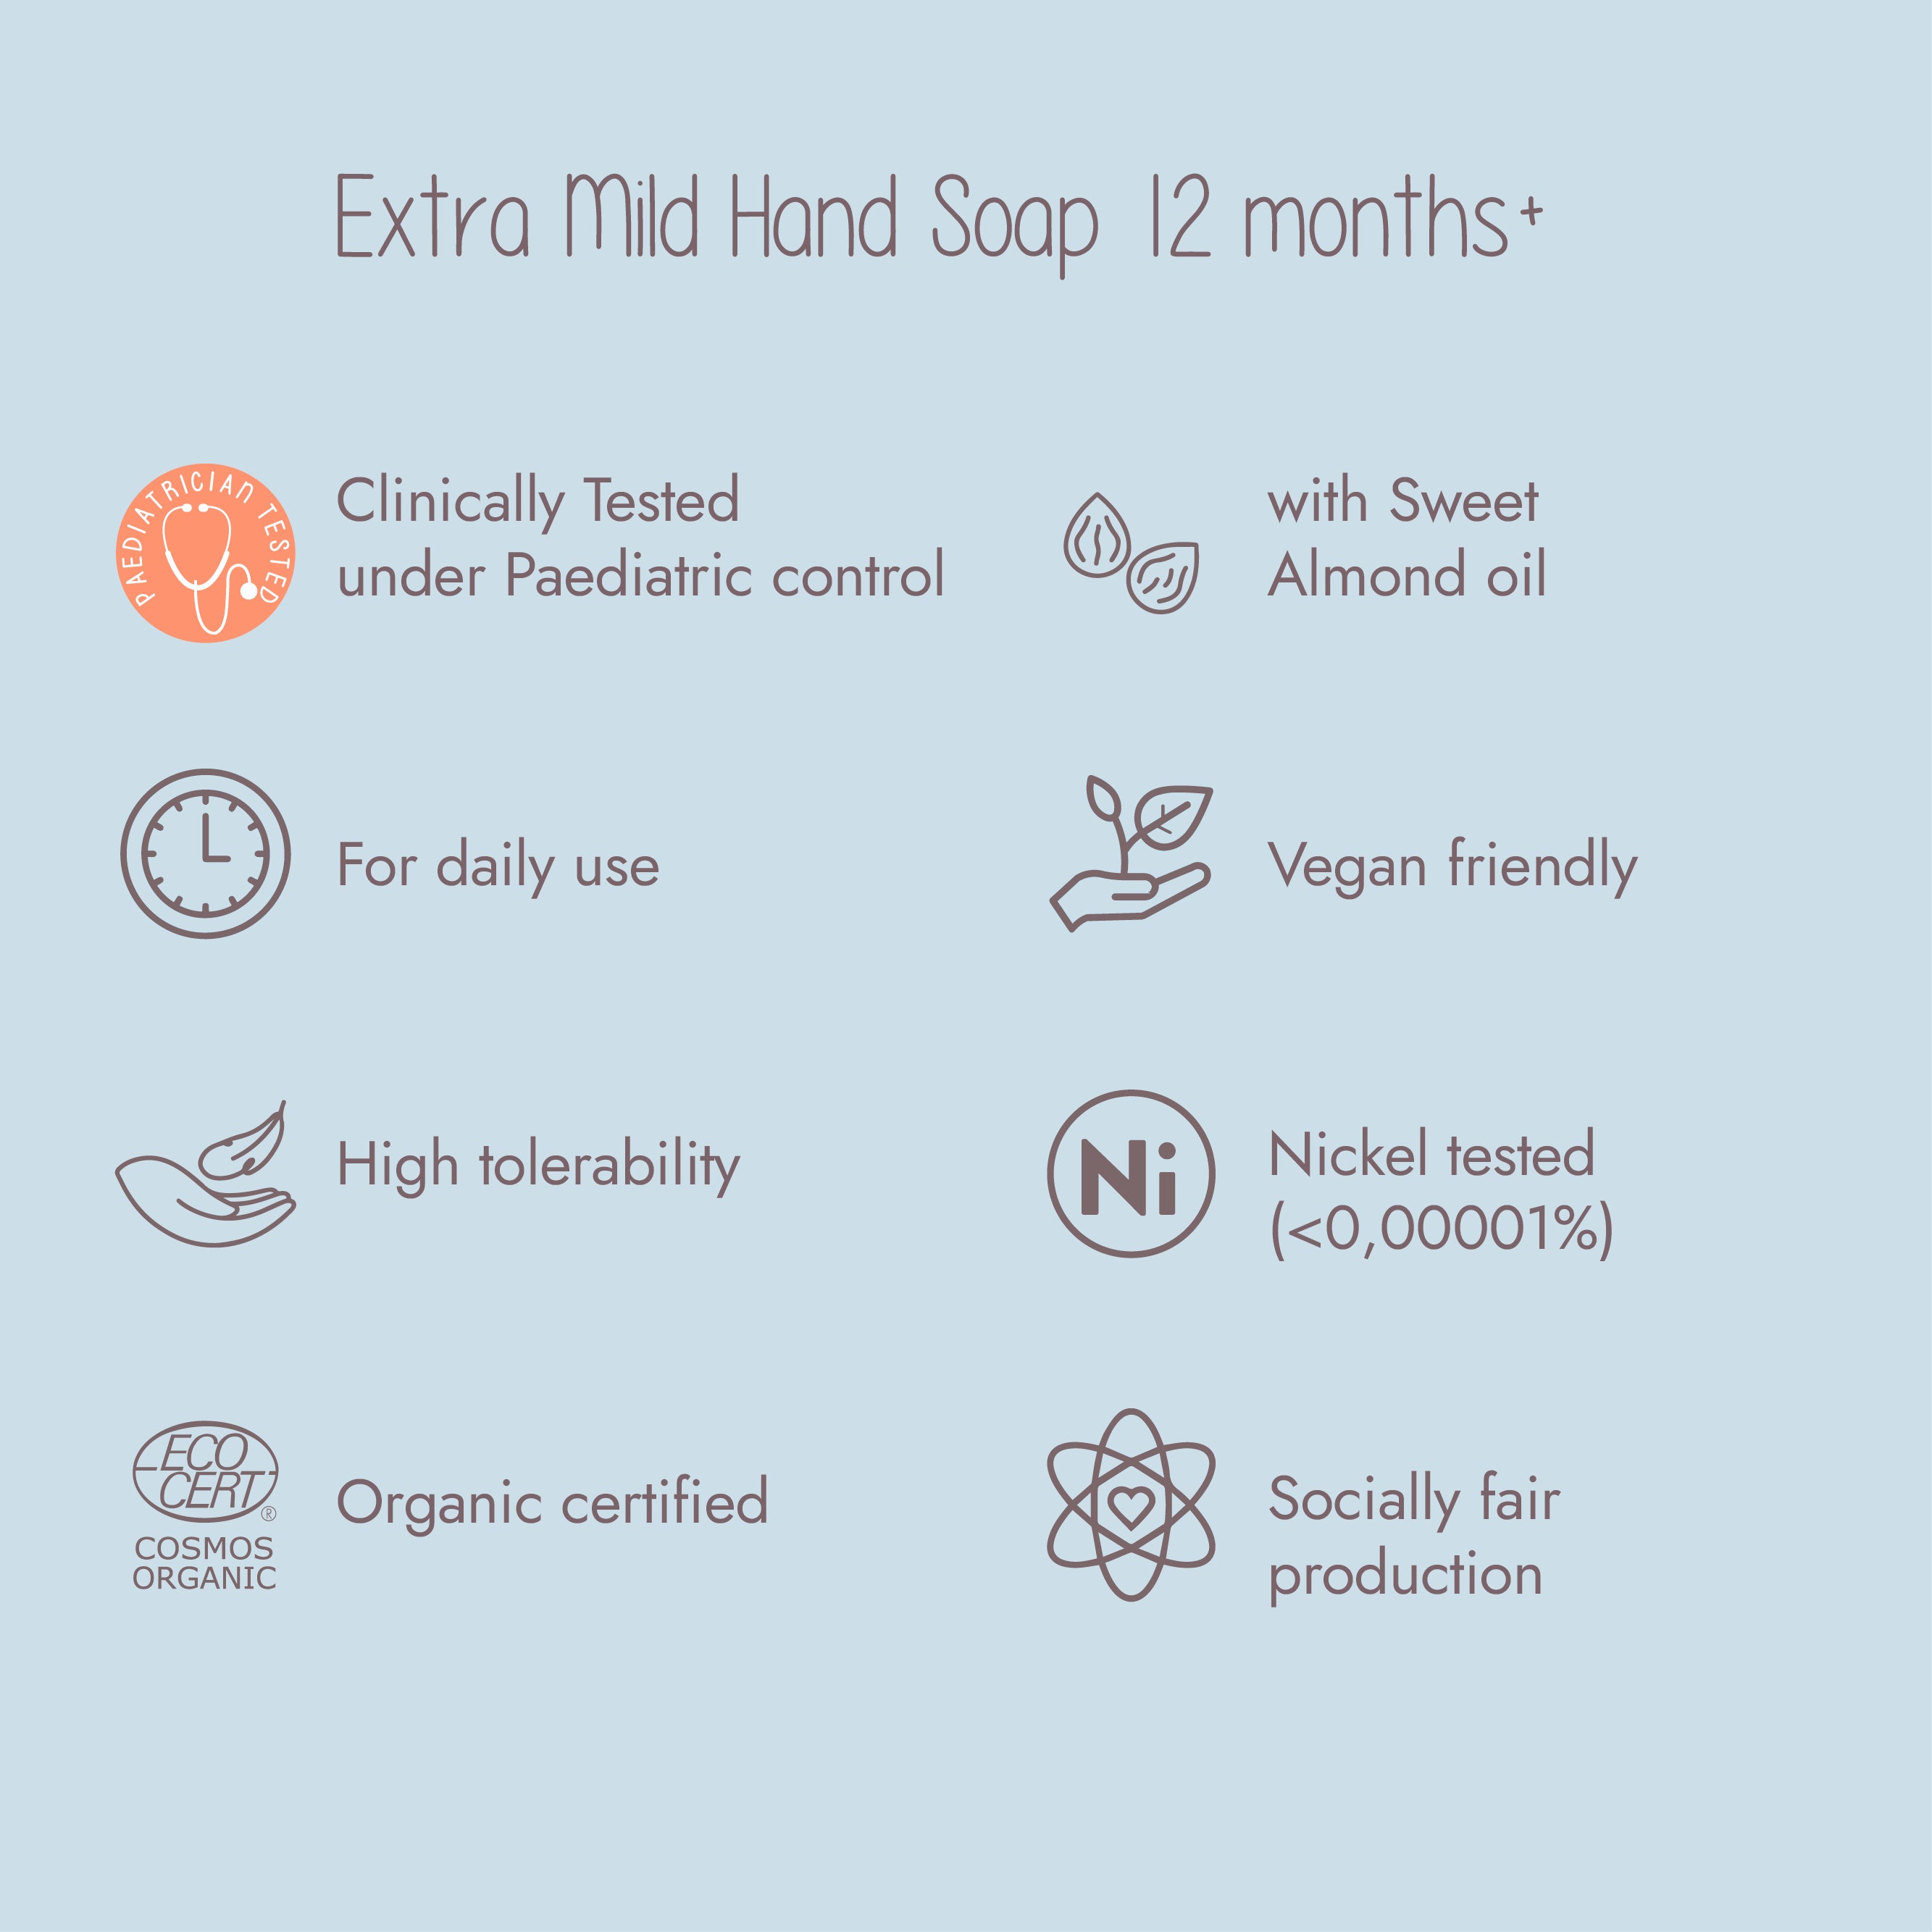 Dadaumpa 12months+ Extra Mild Hand Soap Organic Certified (100 g) scheme